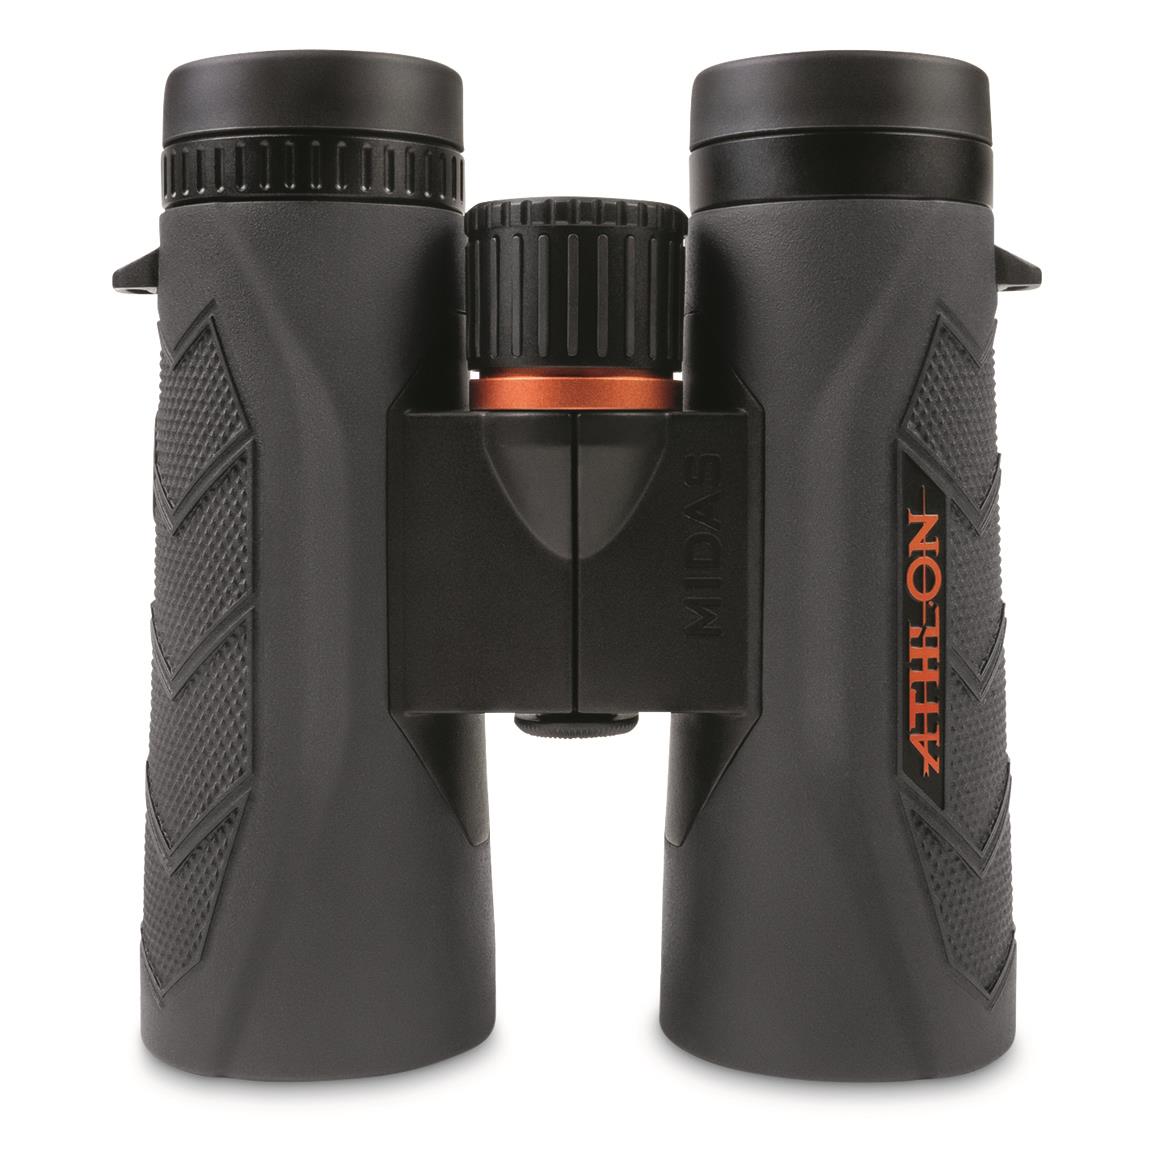 Athlon Midas G2 UHD 10x42mm Binoculars